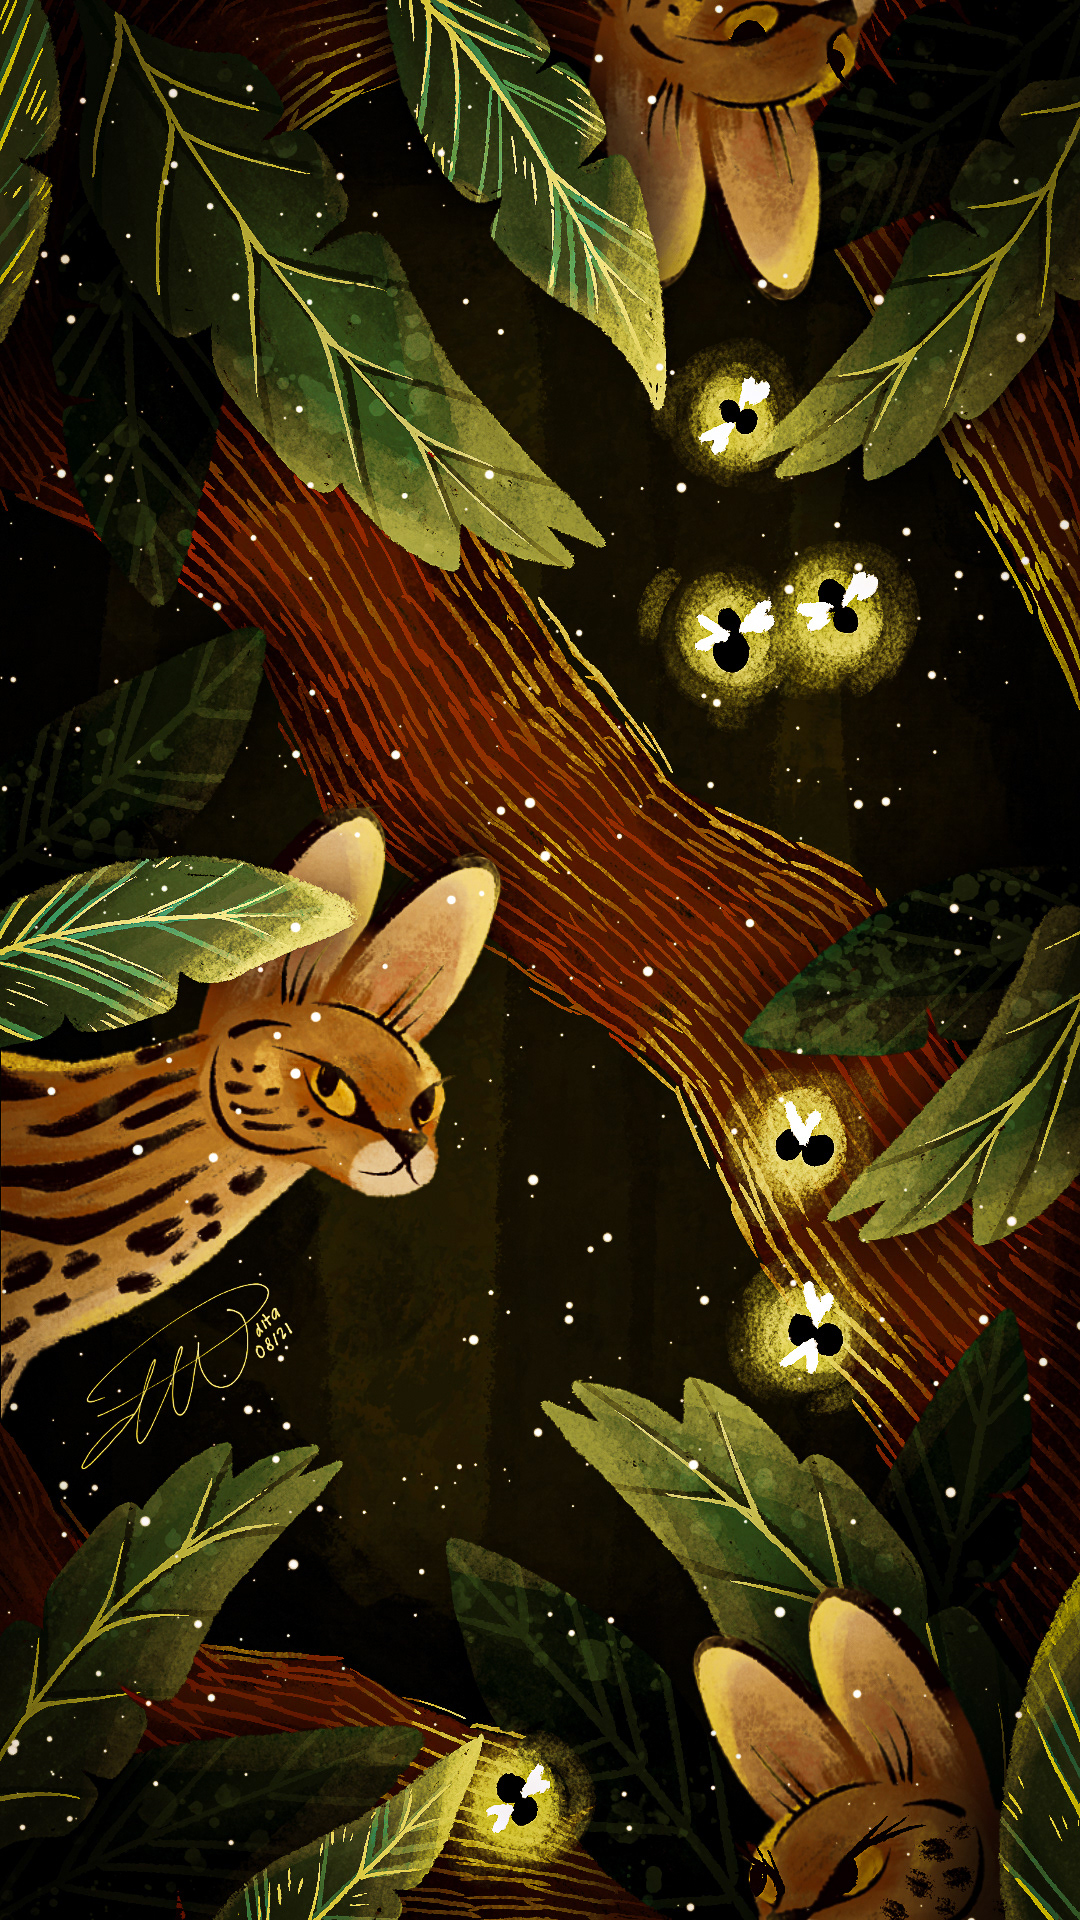 adobe art big cat children's book children's illustration Digital Art  ILLUSTRATION  ocelot panther tiger